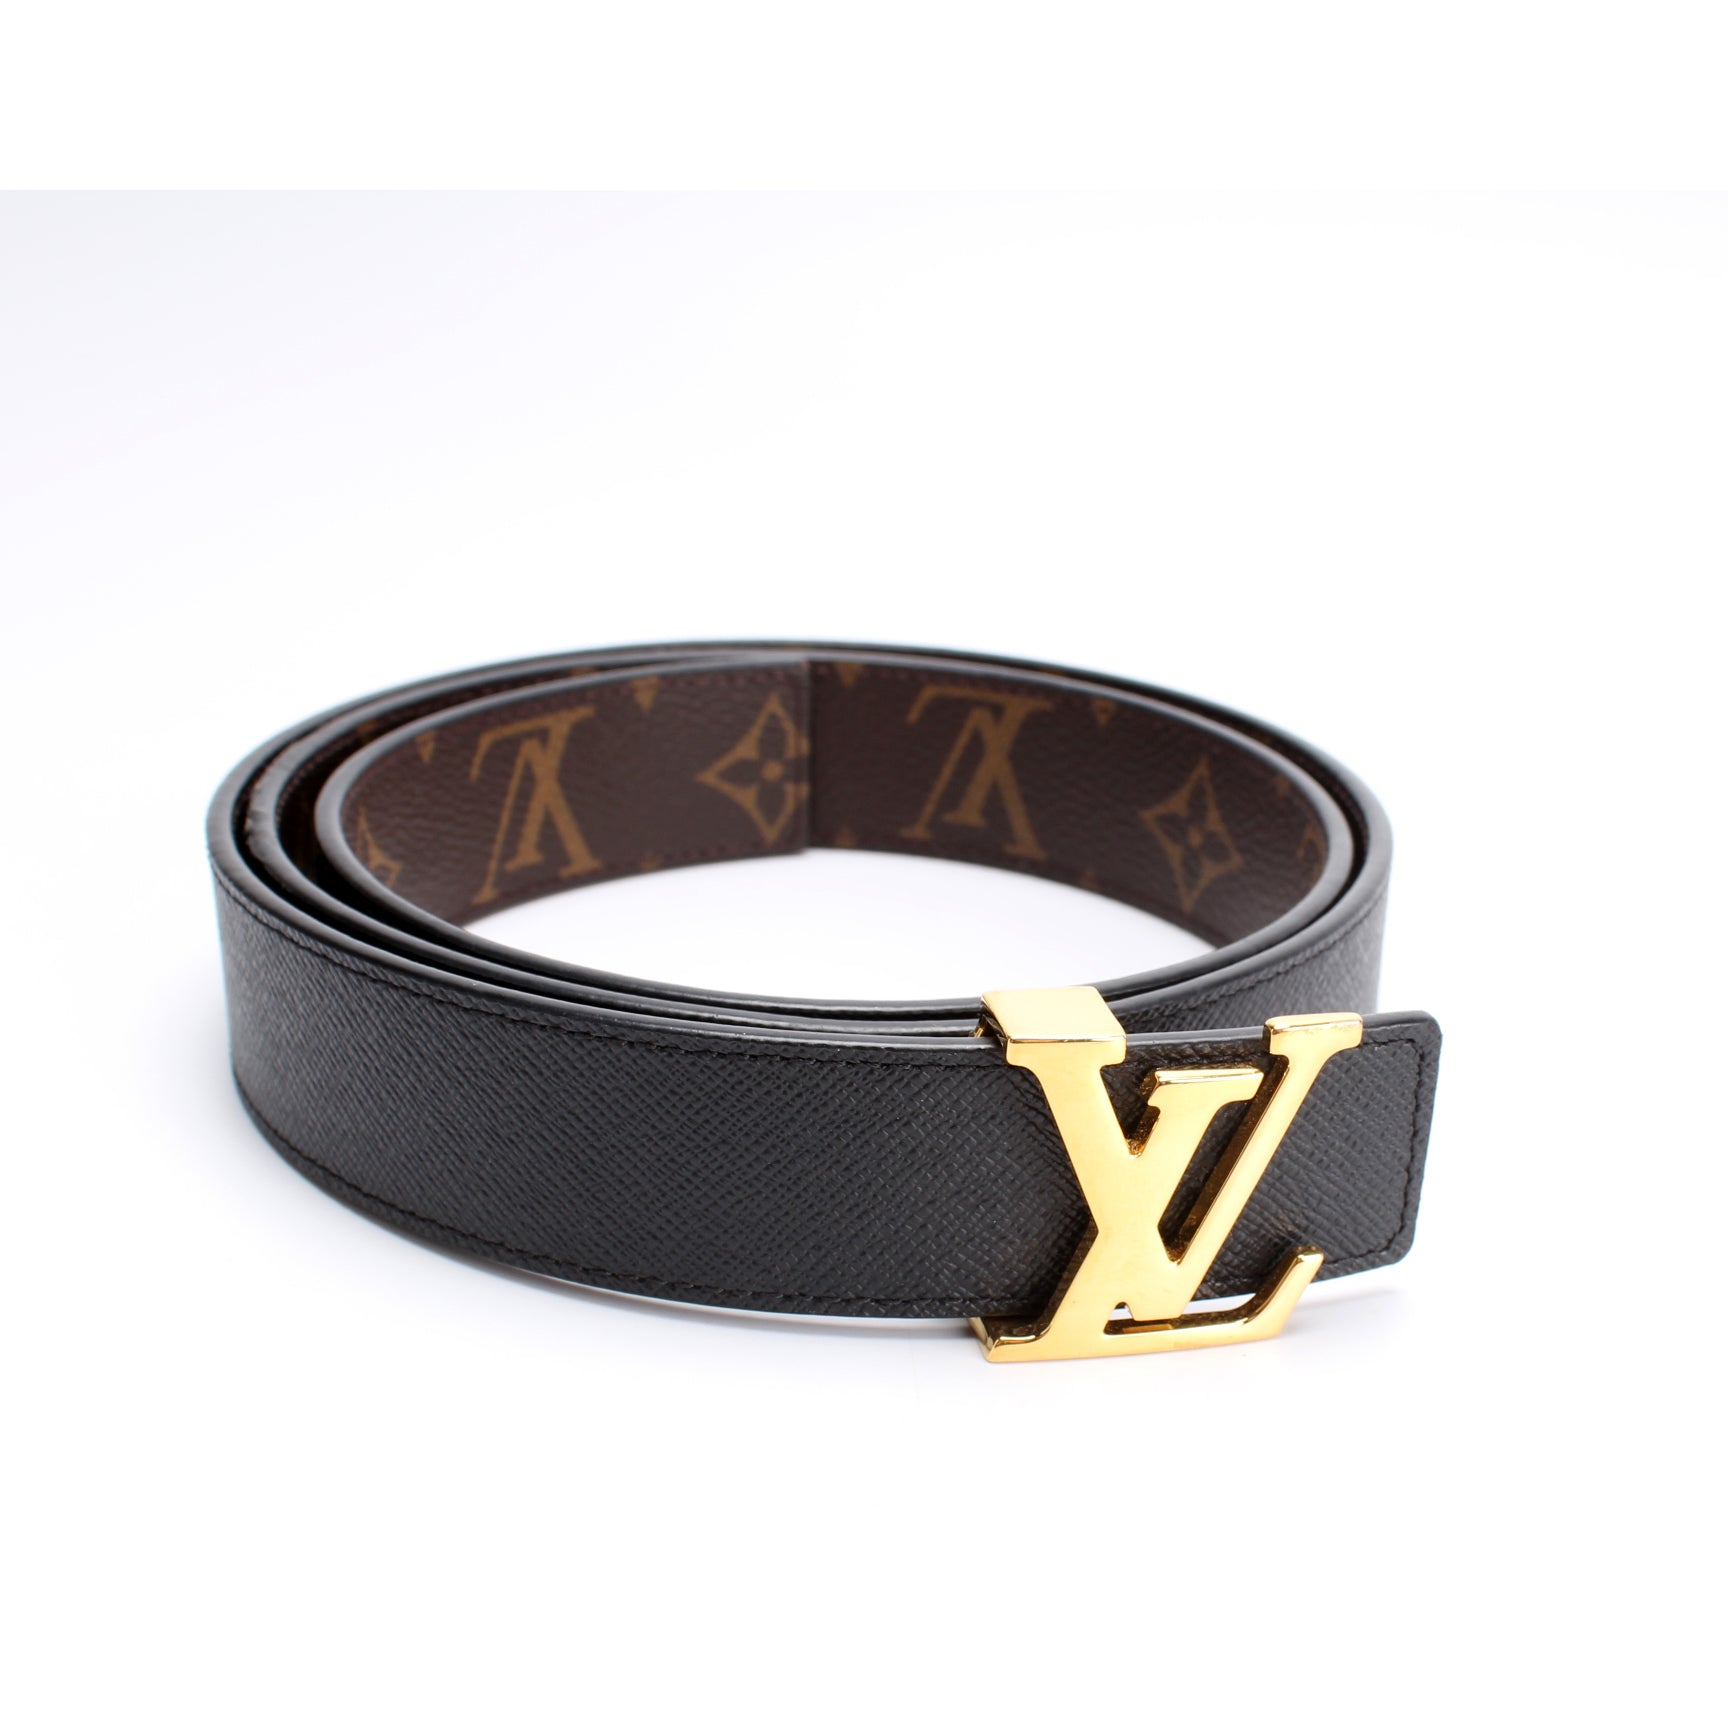 Louis Vuitton, a monogram canvas 'LV Initiales' belt, size 95